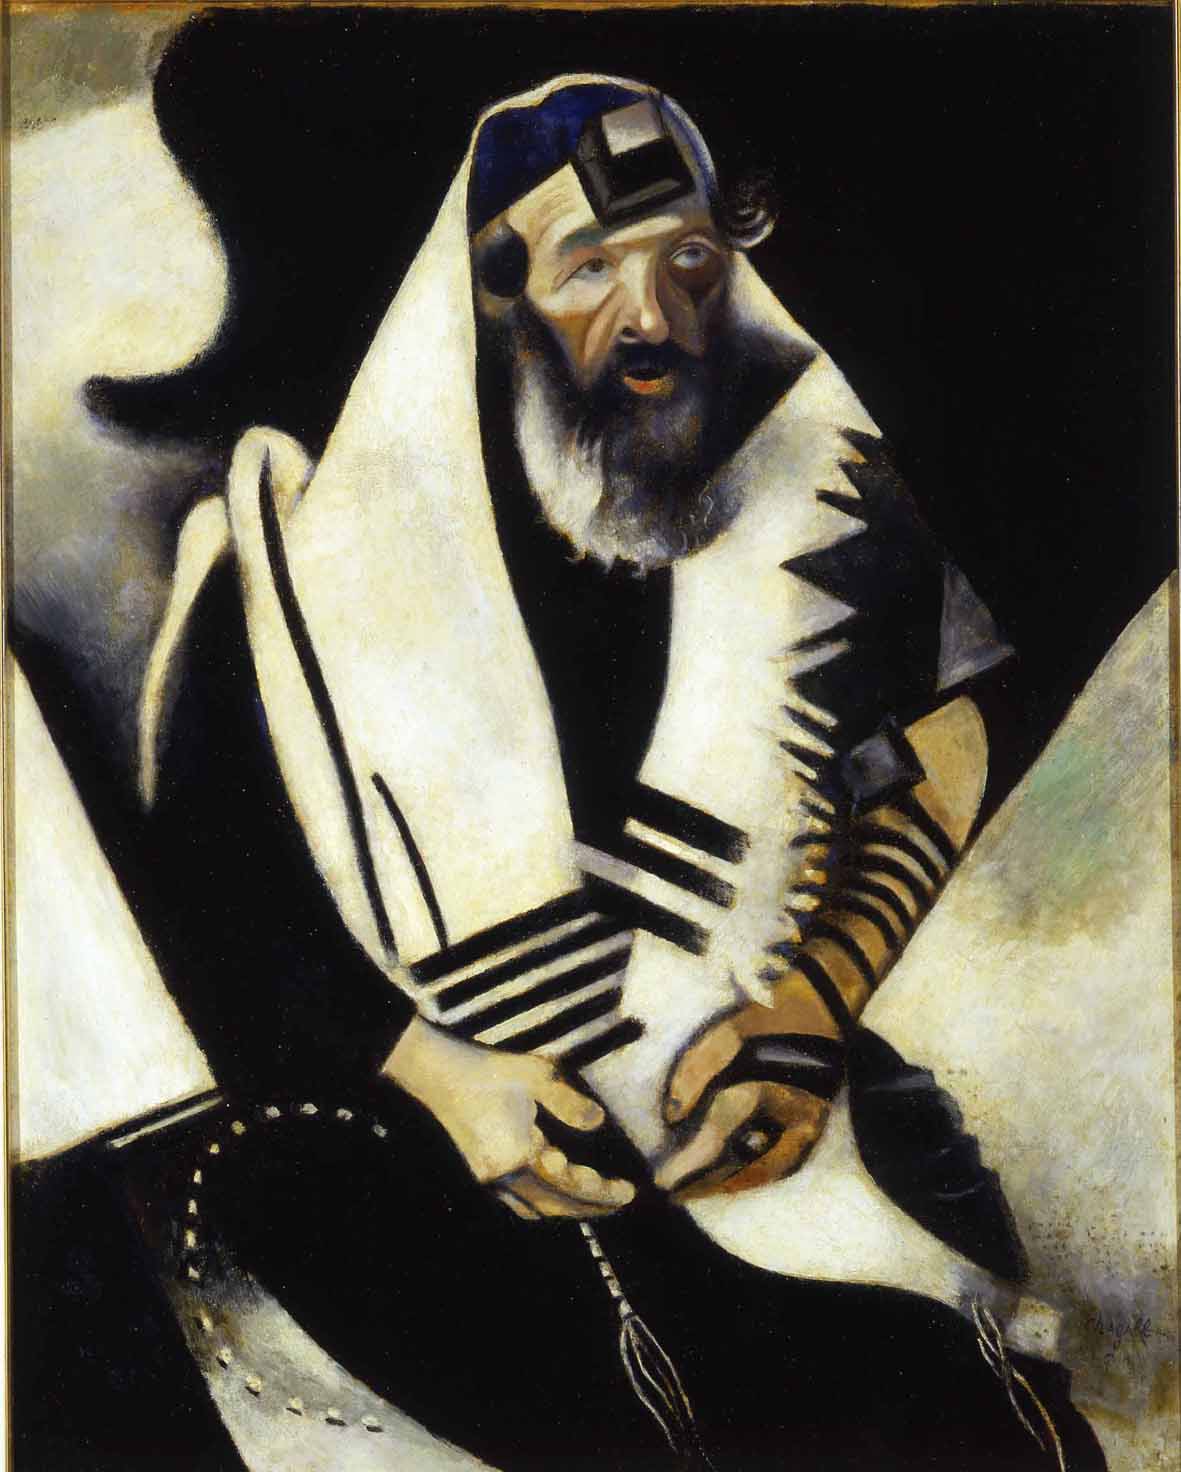 Marc Chagall: Rabbino n.2 o Rabbino di Vitebsk, 1914-22, olio su tela, 104x84cm. Ca’ Pesaro – Galleria Internazionale d’Arte Moderna